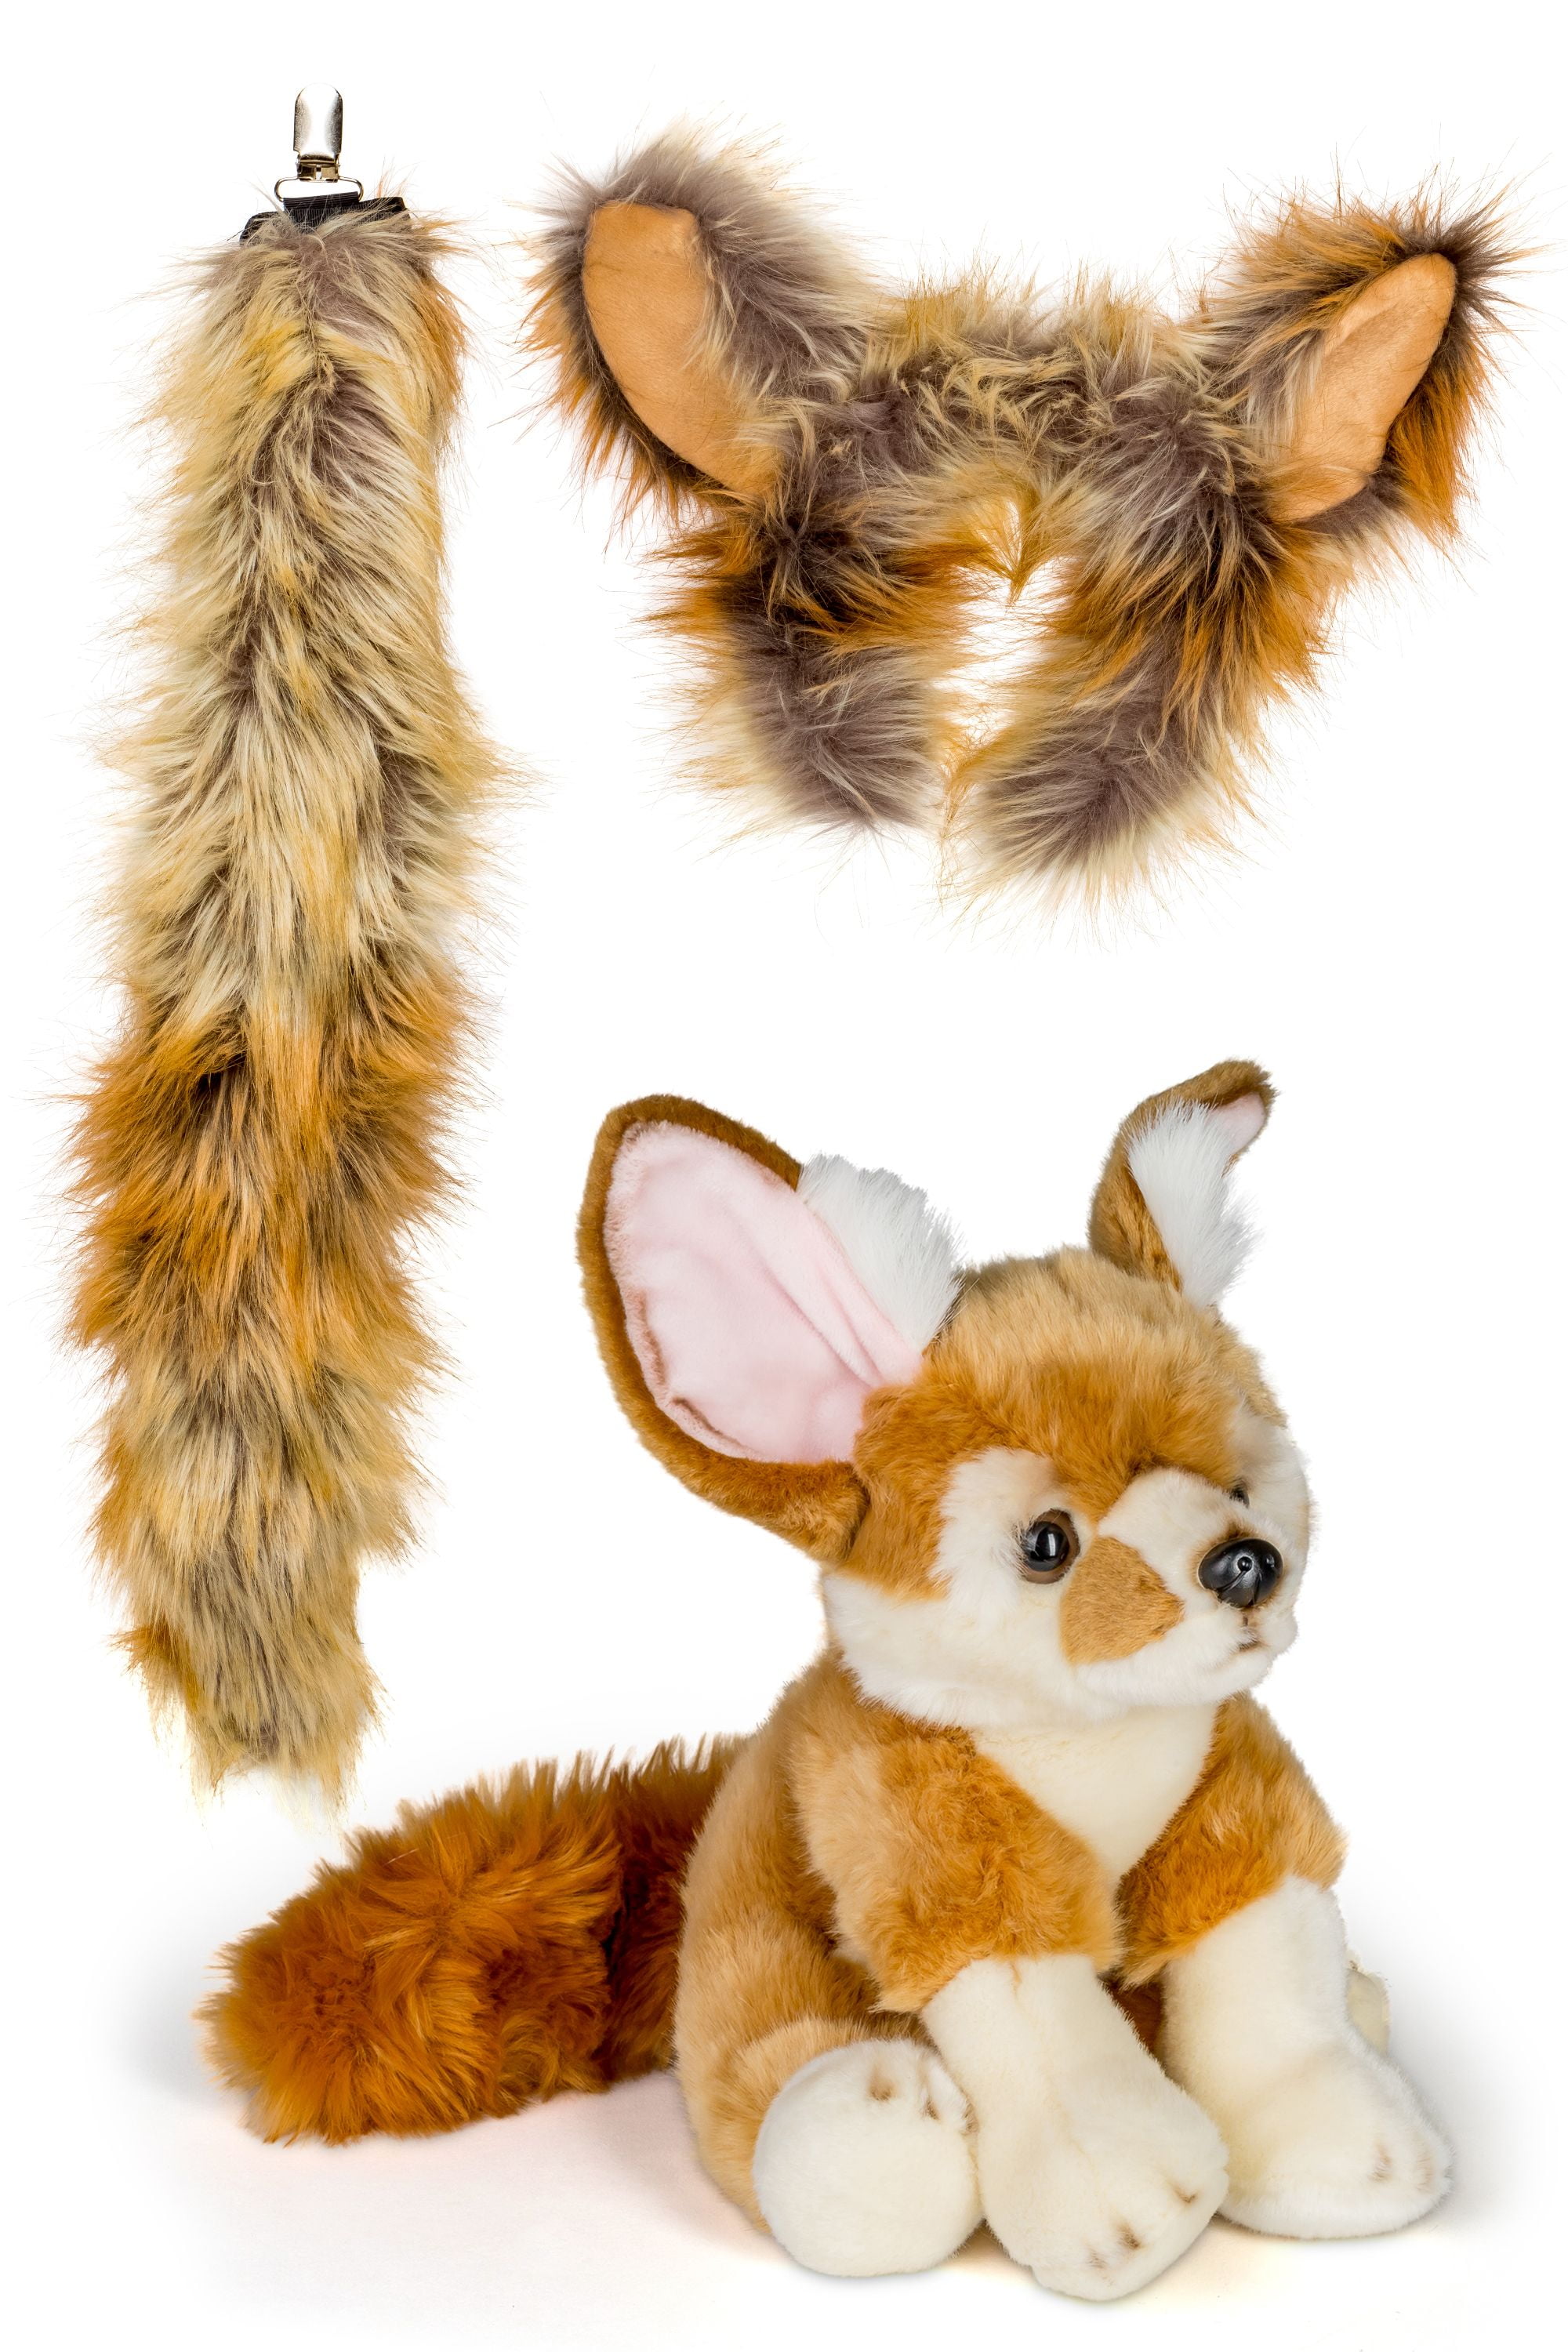 fennec fox stuffed animal